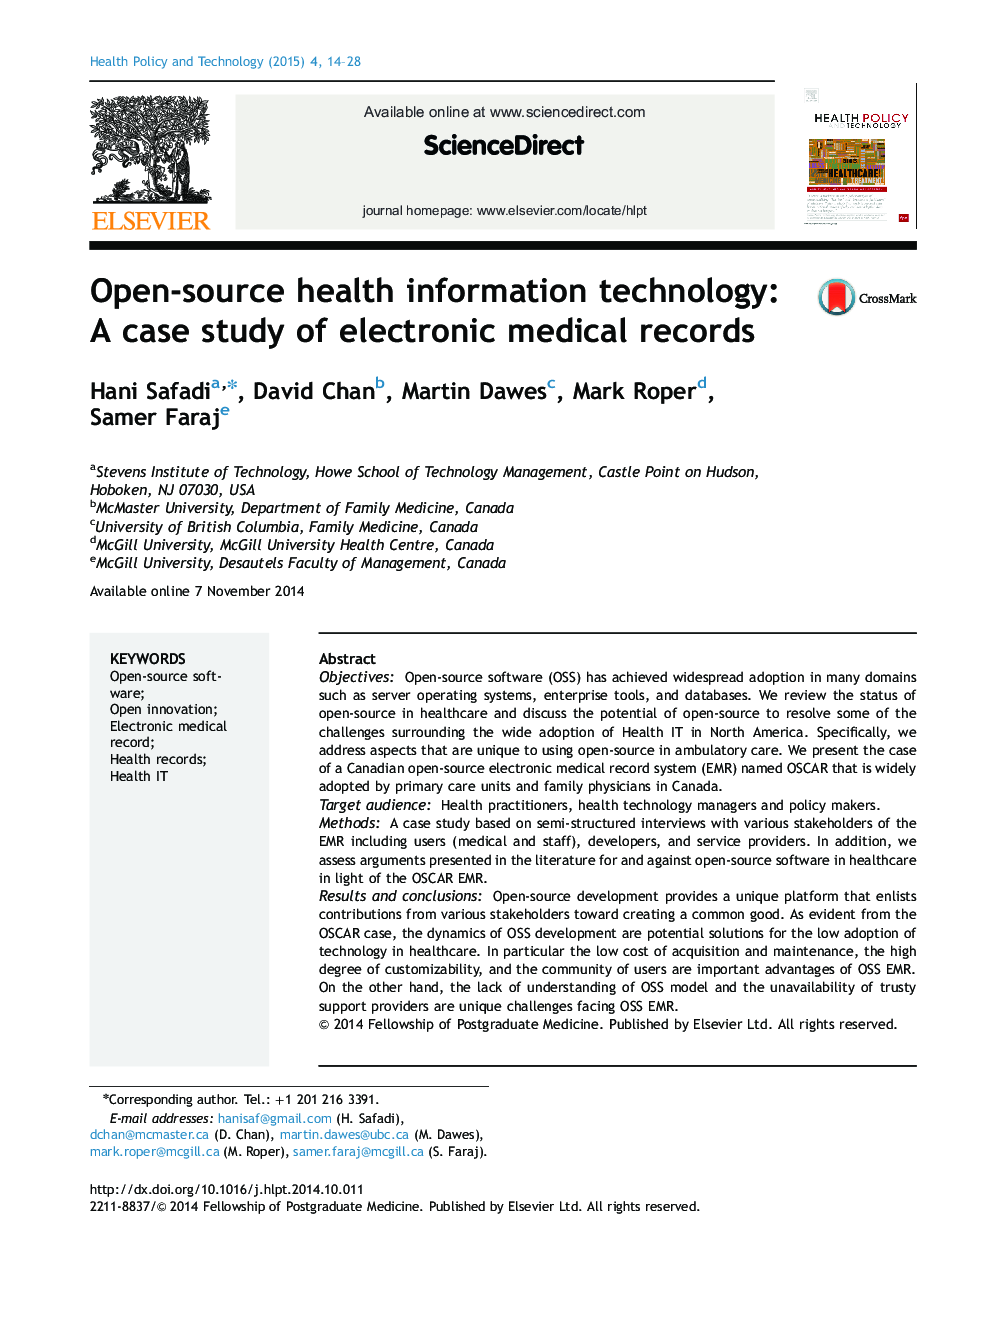 فن آوری اطلاعات سلامت منبع باز: مطالعه موردی سوابق پزشکی الکترونیکی 